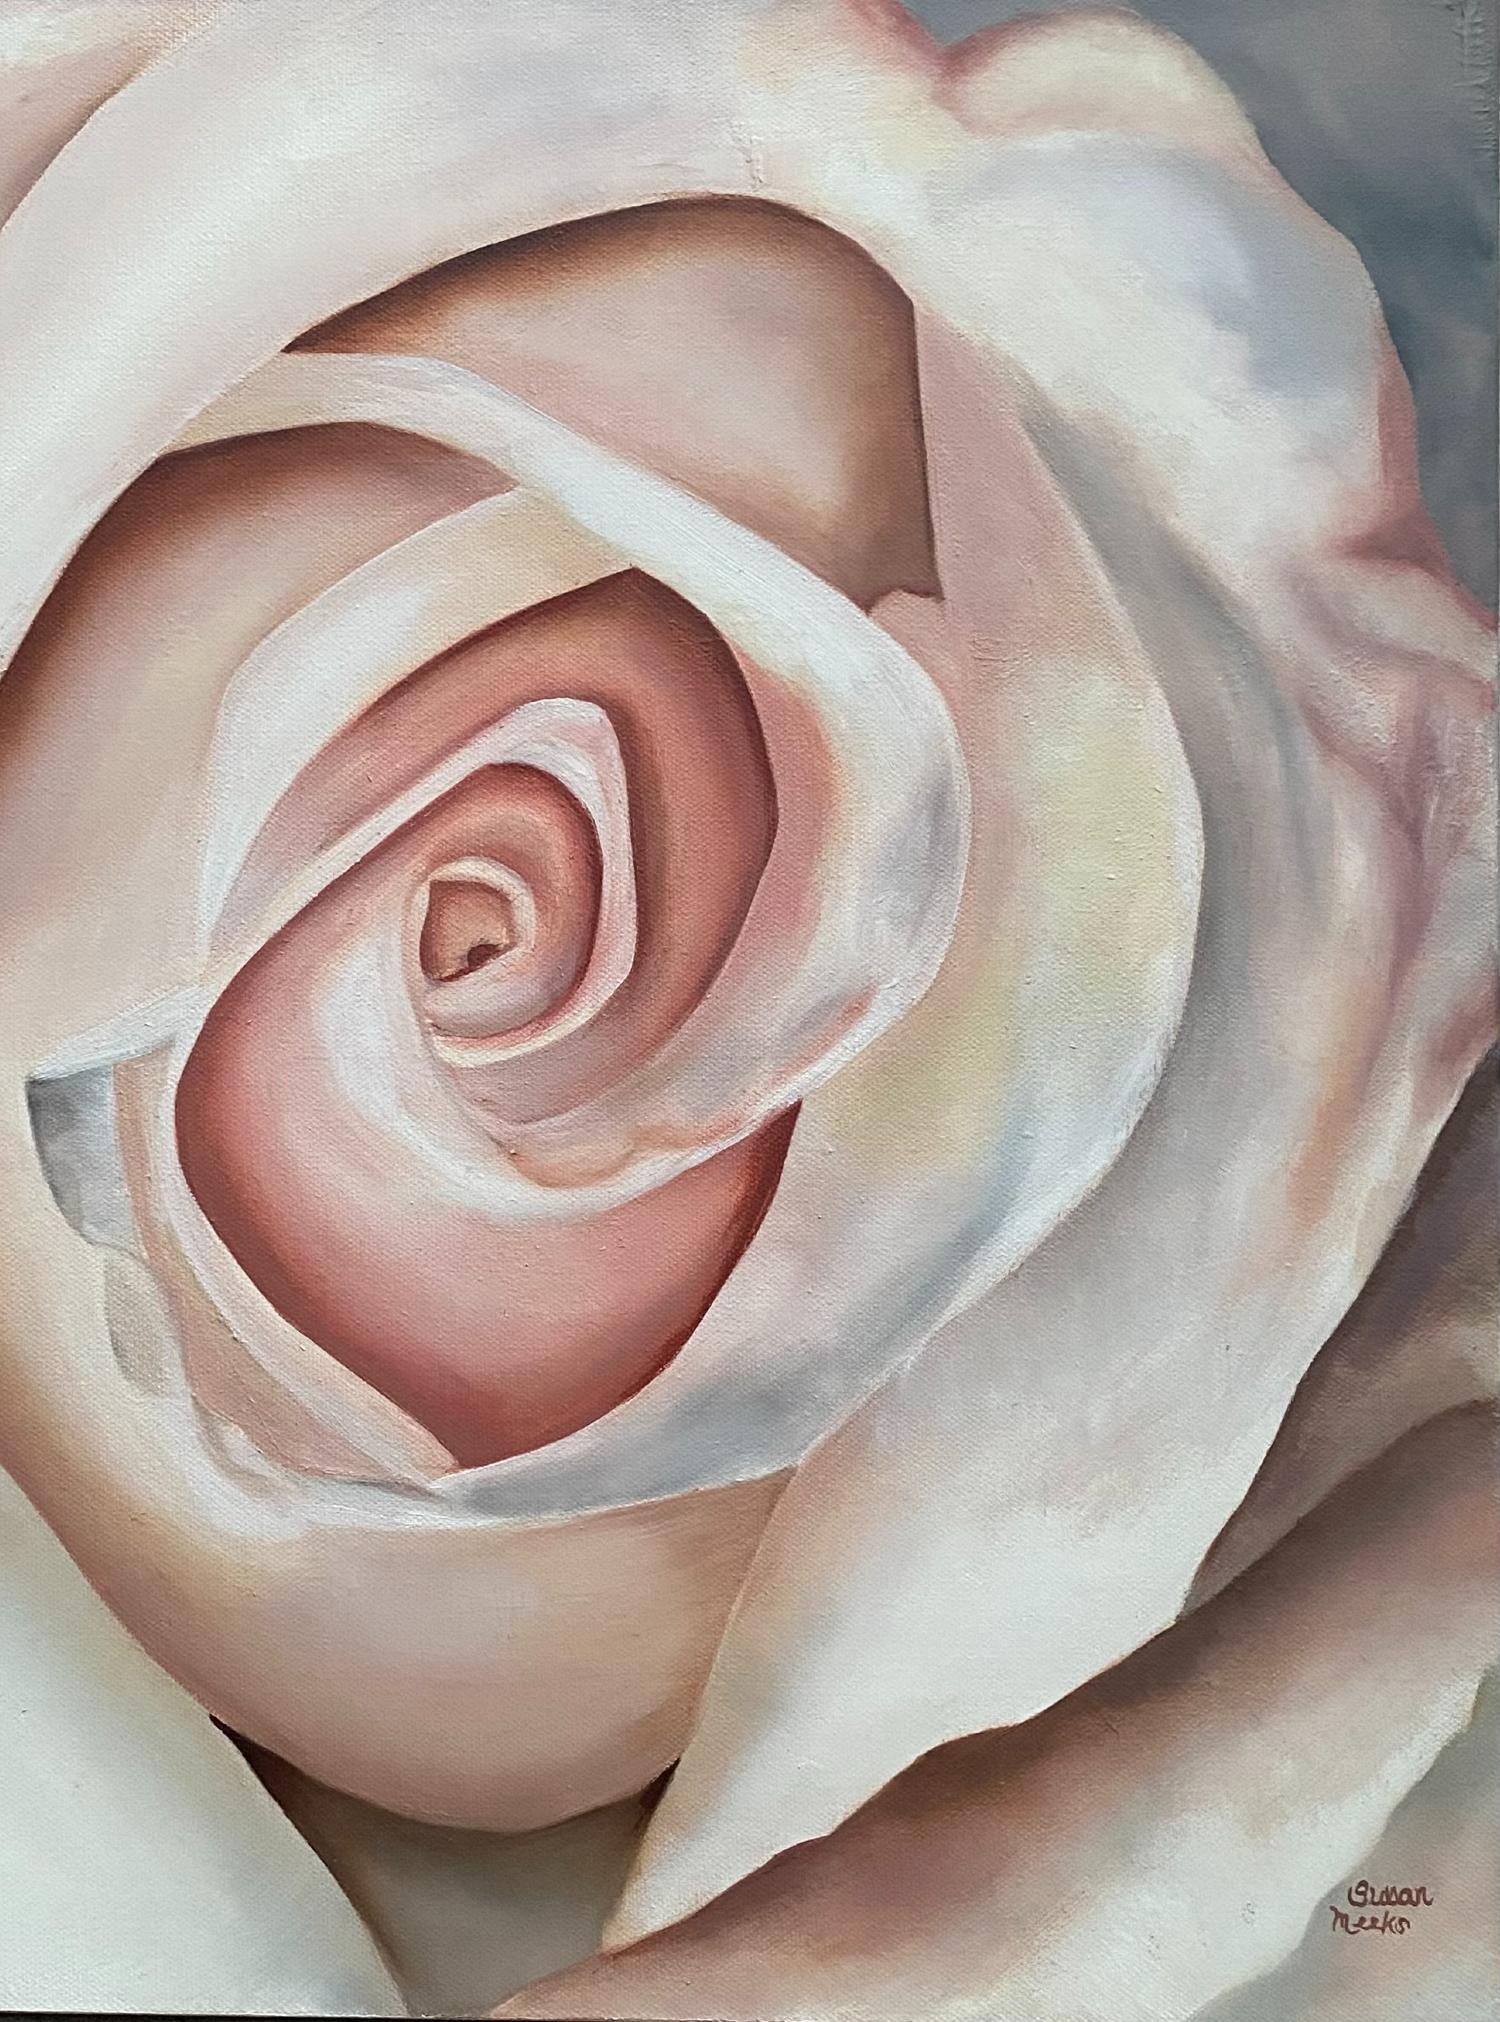  White Rose von Susan Meeks wurde erst 2024 als Teil ihrer Blumenkollektion gemalt. White Roses ist in der Galerie verpackt, so dass kein Rahmen erforderlich ist.

Weiße Rosen symbolisieren Treue, Reinheit und Unschuld. 